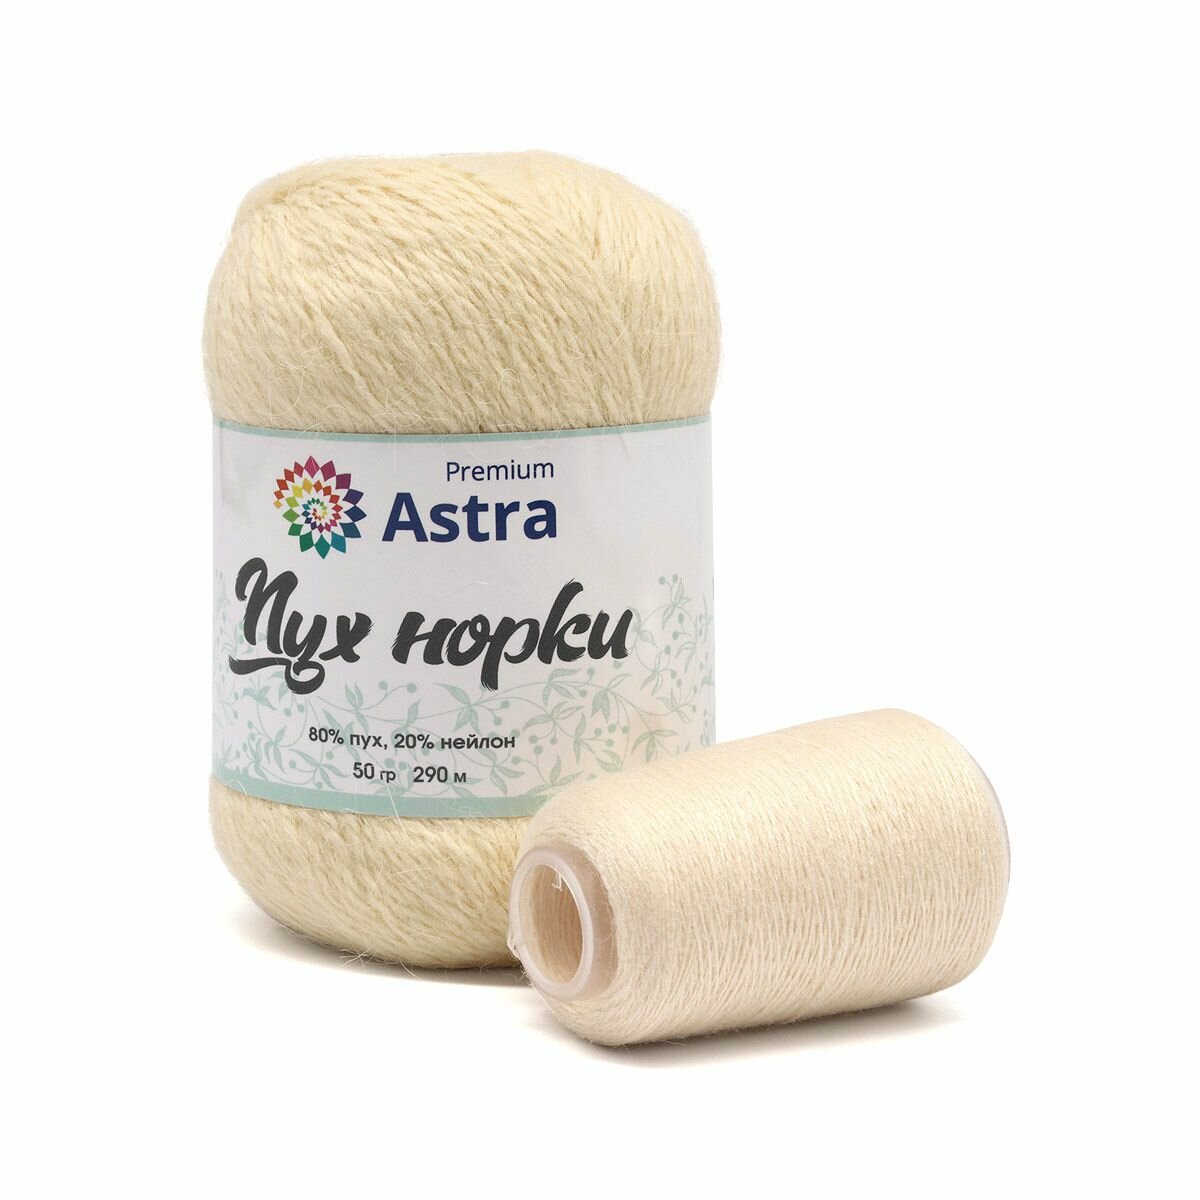 Пряжа для вязания Astra Premium 'Пух норки' (Mink yarn), 50г, 290м (+- 5%) (80% пух, 20% нейлон) (+ нить 20 г) (065 кремовый)